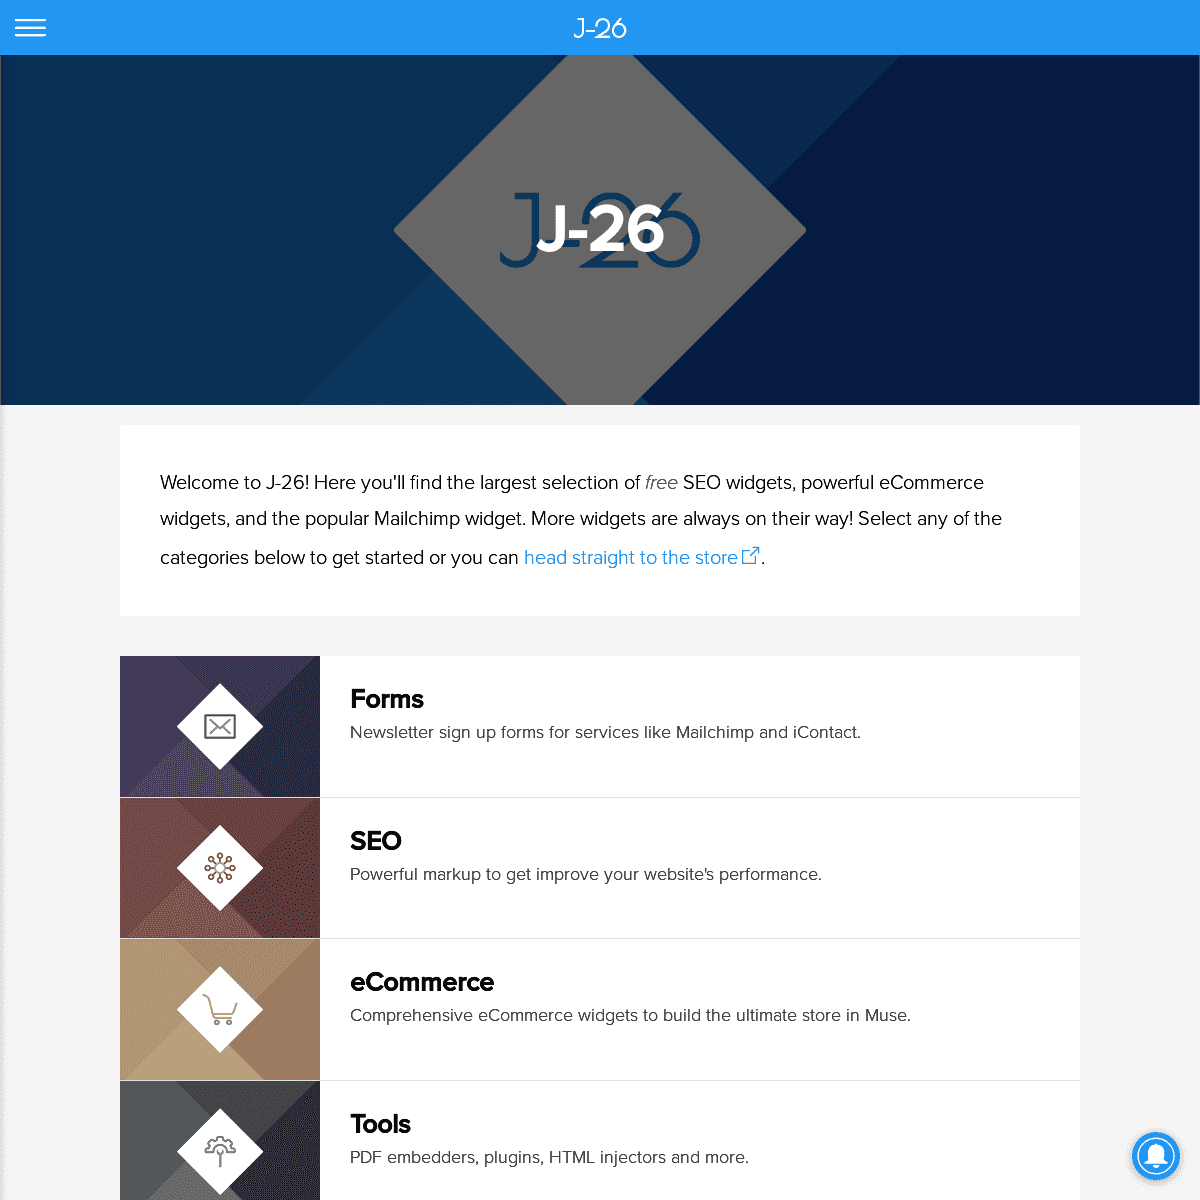 A complete backup of j-26.com